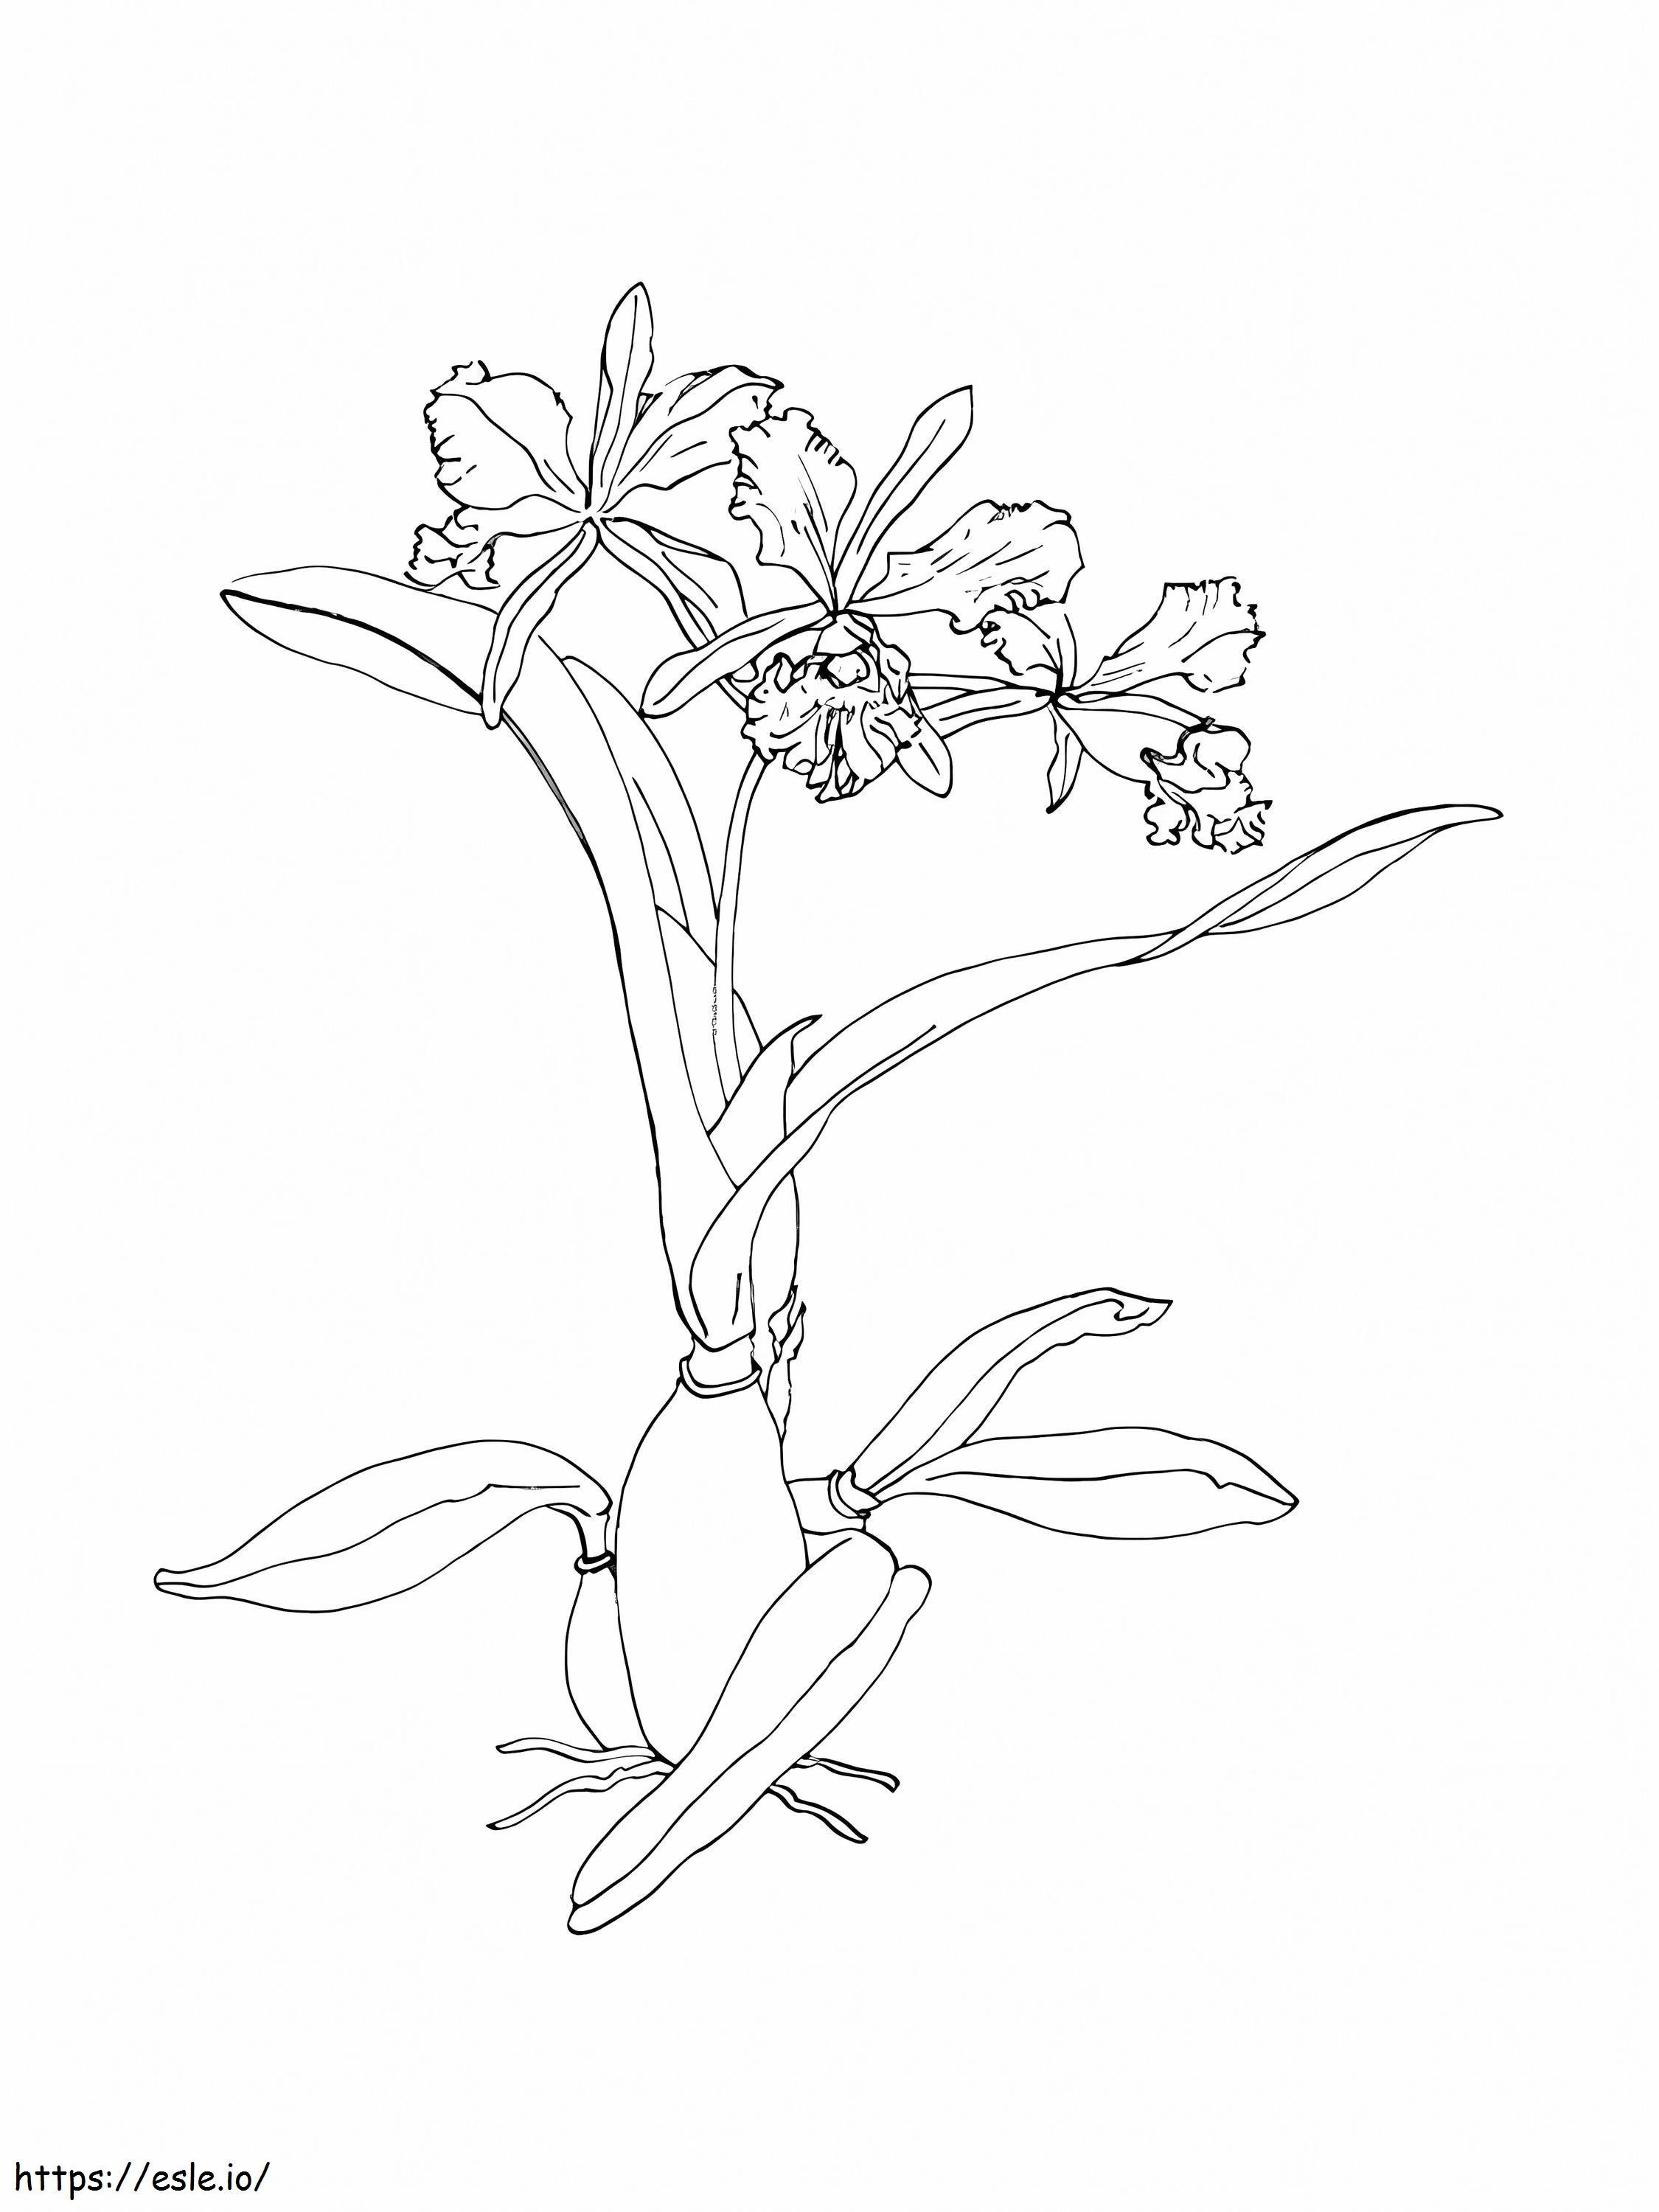 Coloriage Fleur d'orchidée gratuite à imprimer dessin